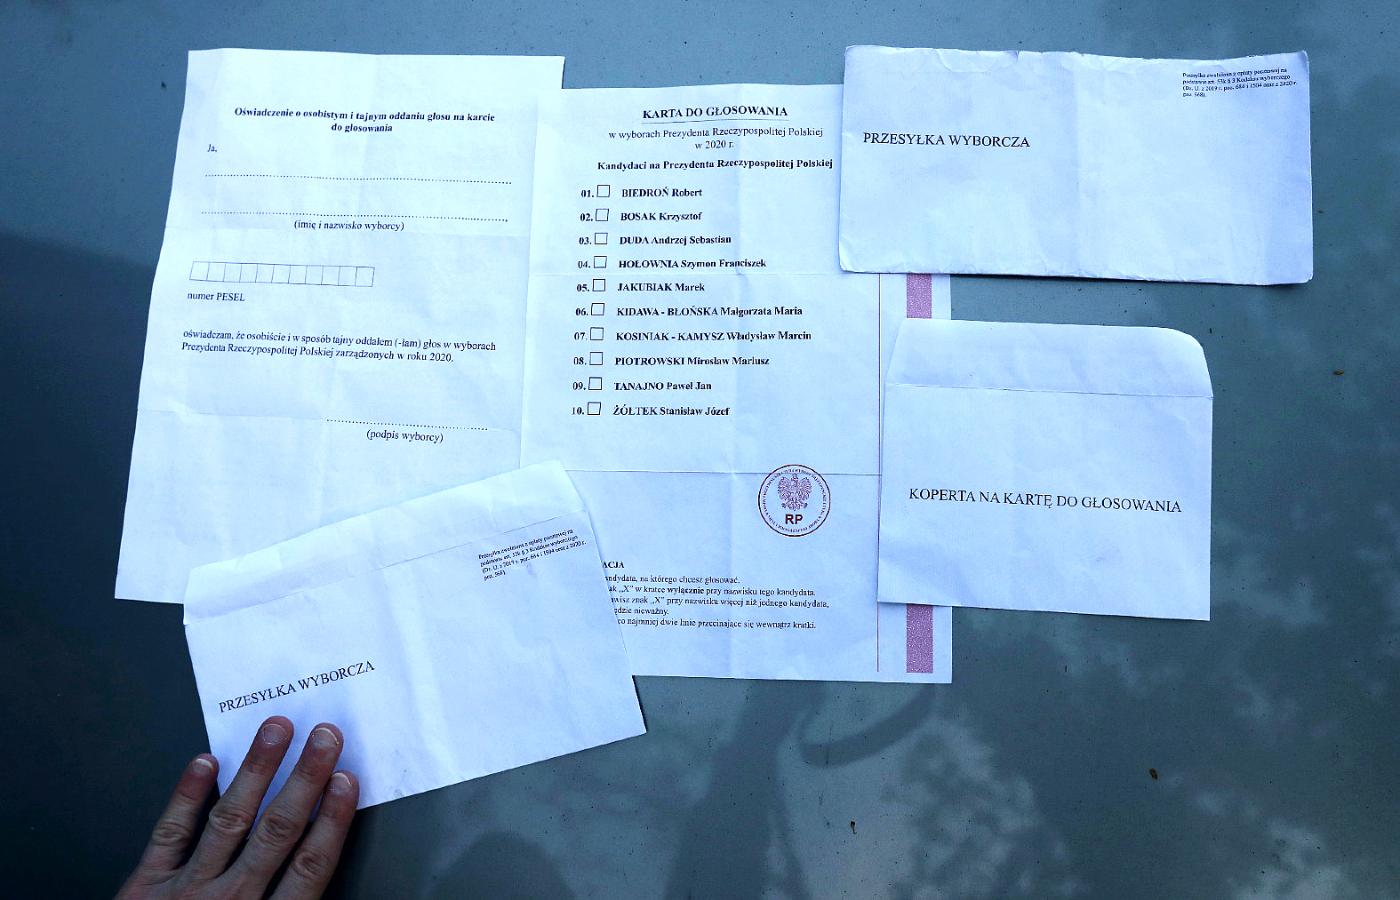 Pakiet do głosowania korespondencyjnego, który zdaniem kandydata na prezydenta Stanisława Żółtka wyciekł z firmy przesyłkowej.